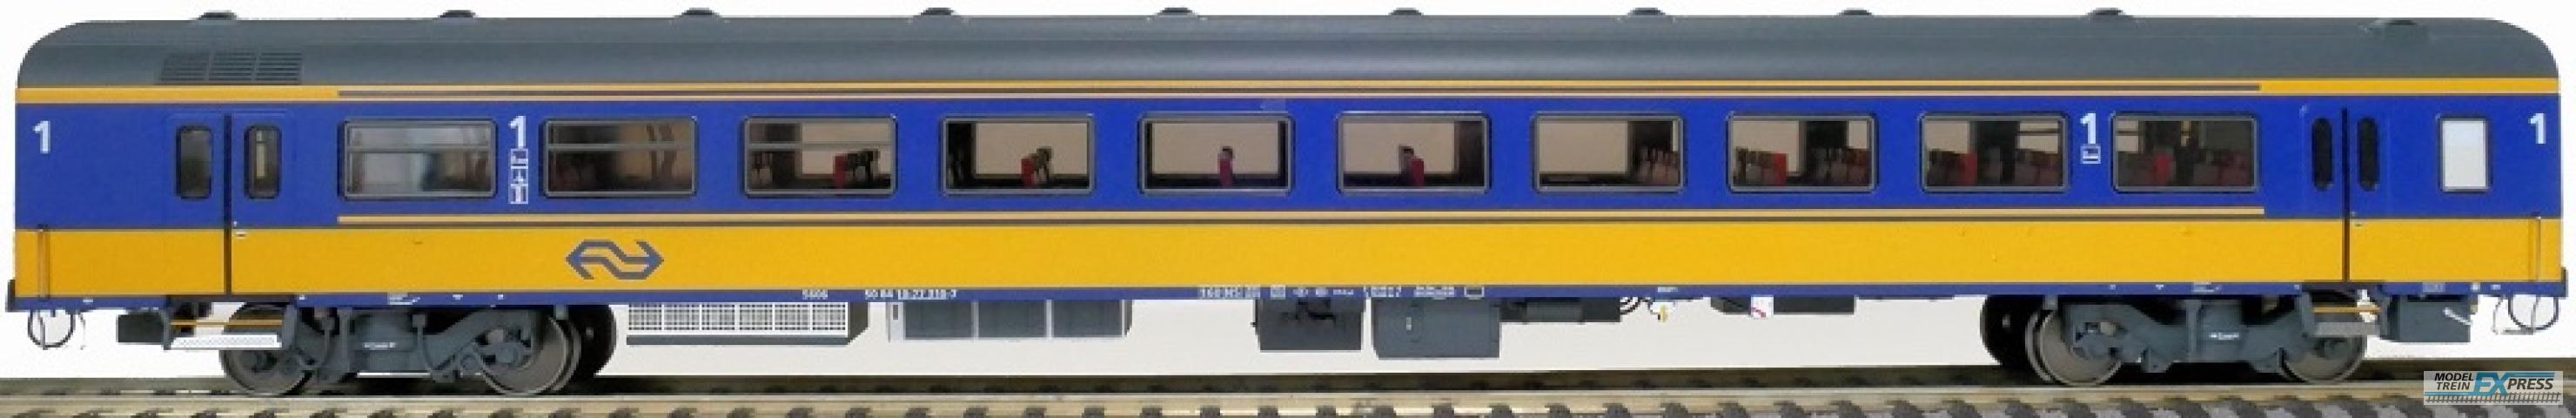 Exact-train 11100 NS ICRm Garnitur 4 Reisezugwagen A( Neue farbe Gelb / Blau), Ep. V